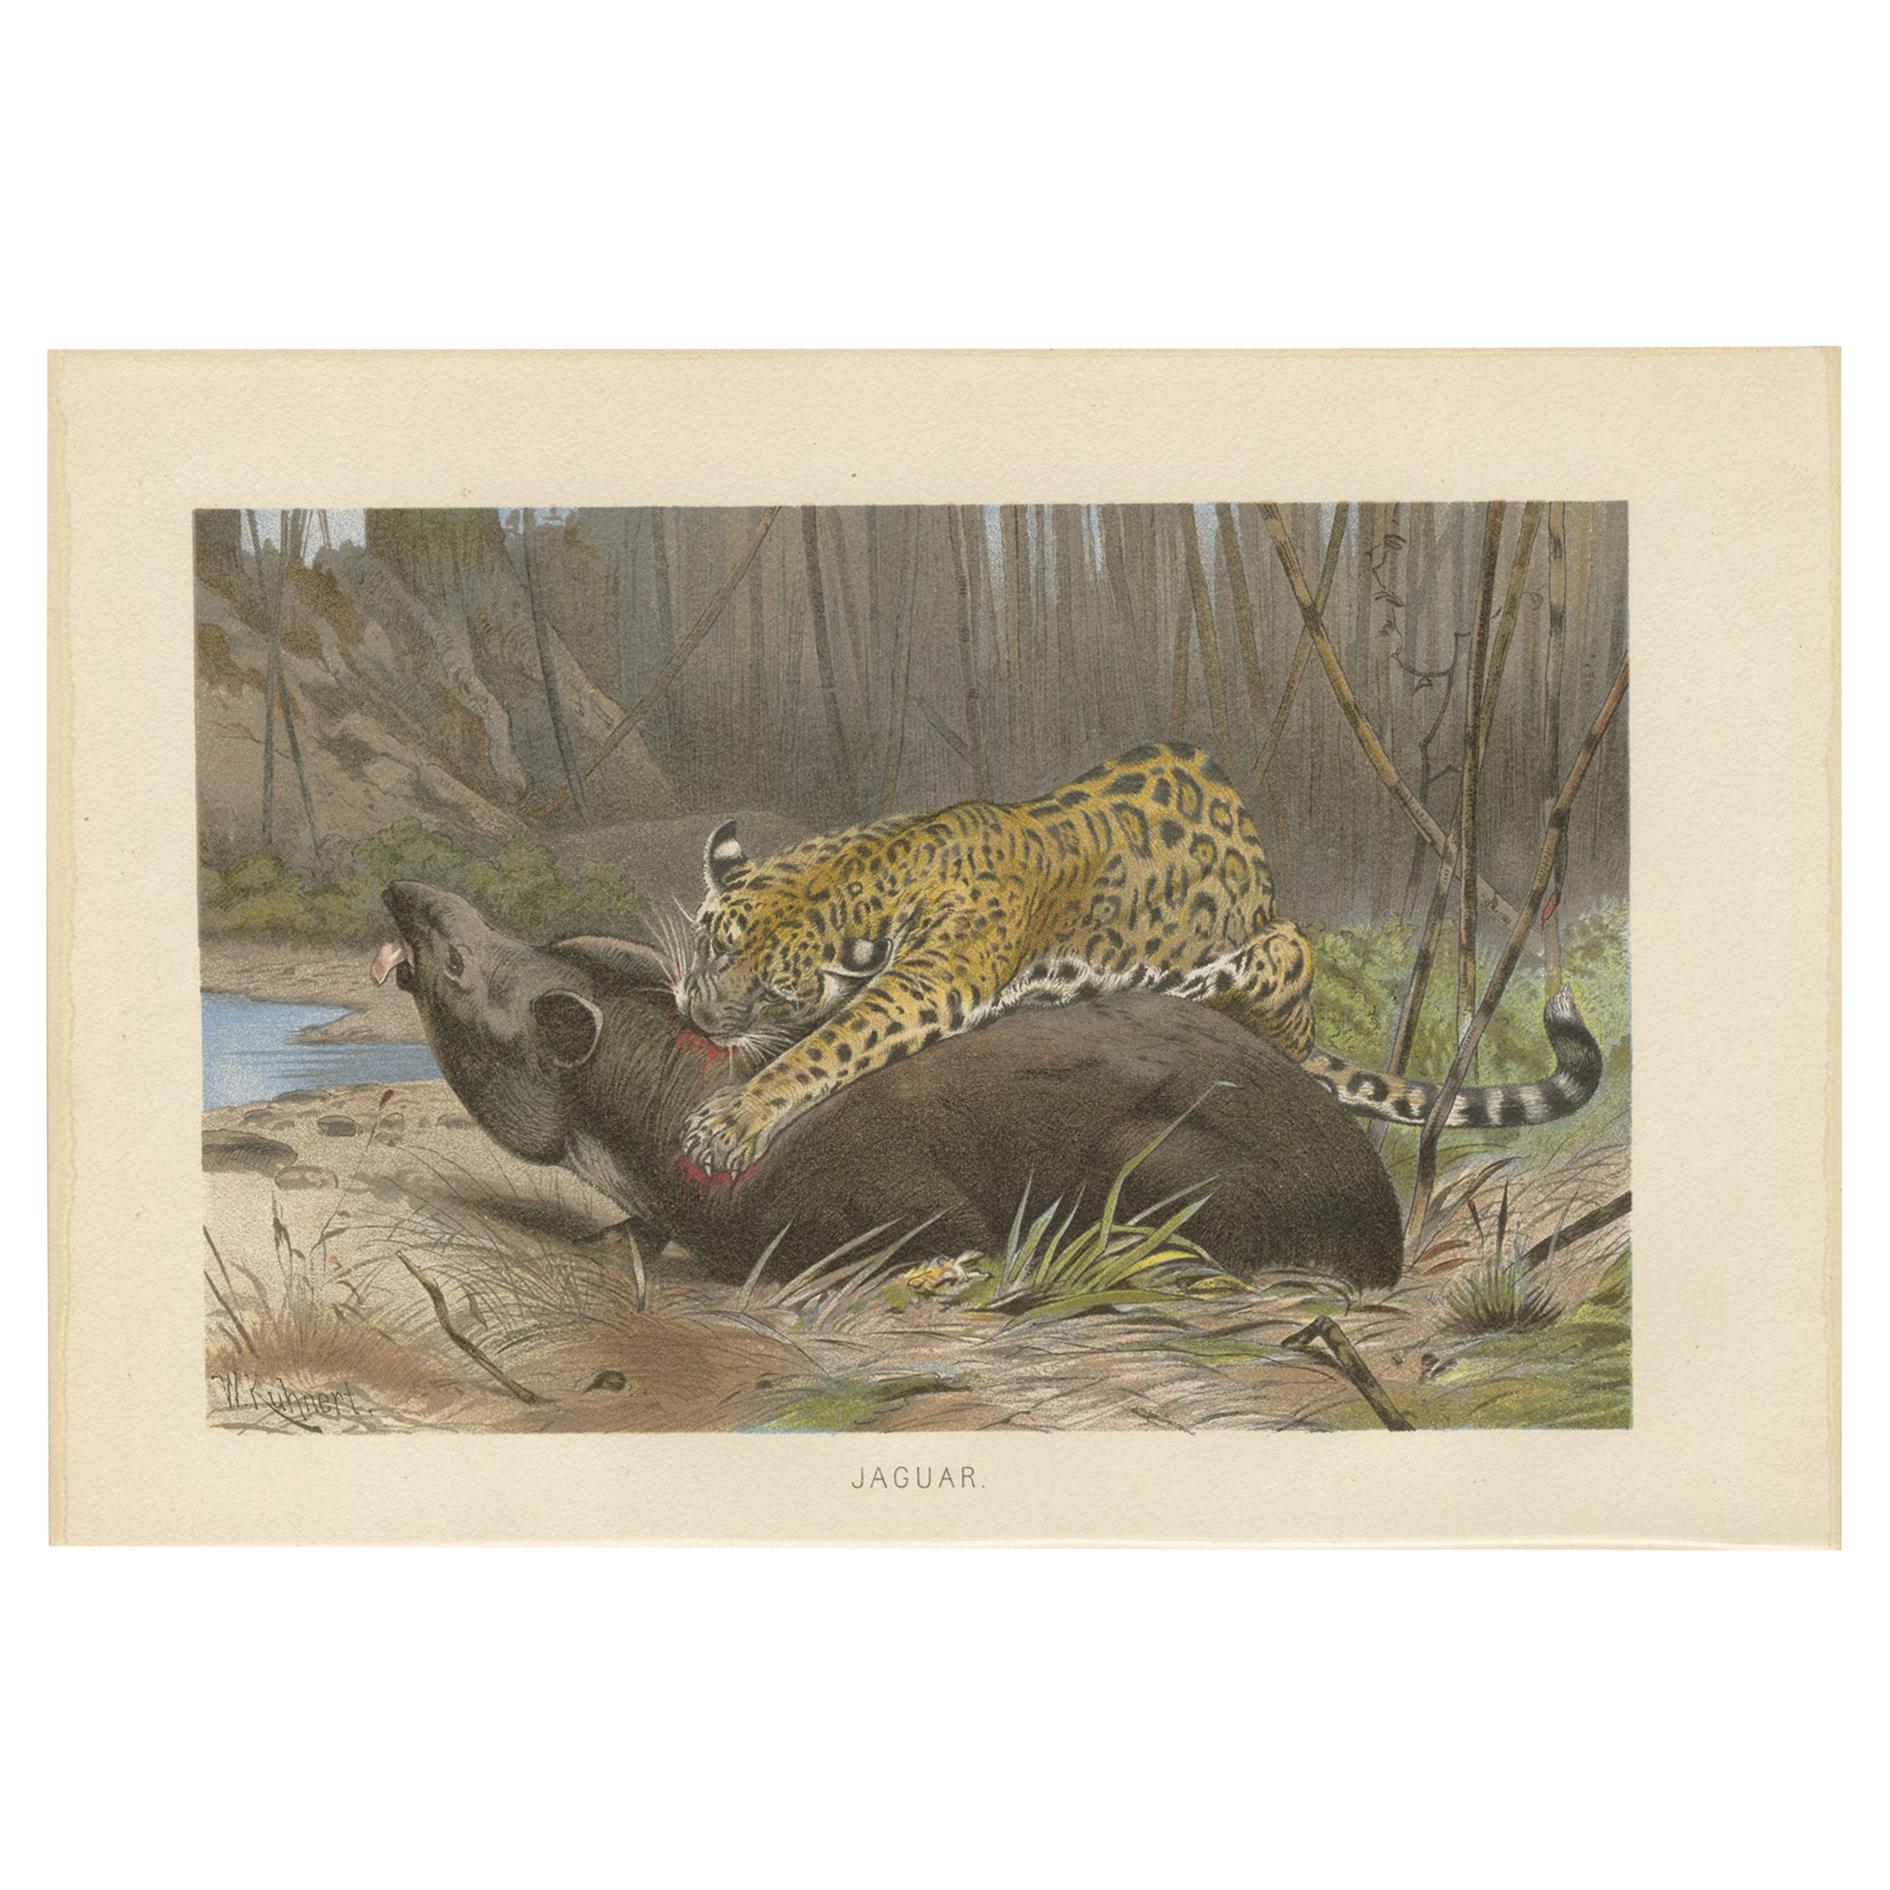 Impression ancienne d'un Jaguar par Brehm, datant d'environ 1890